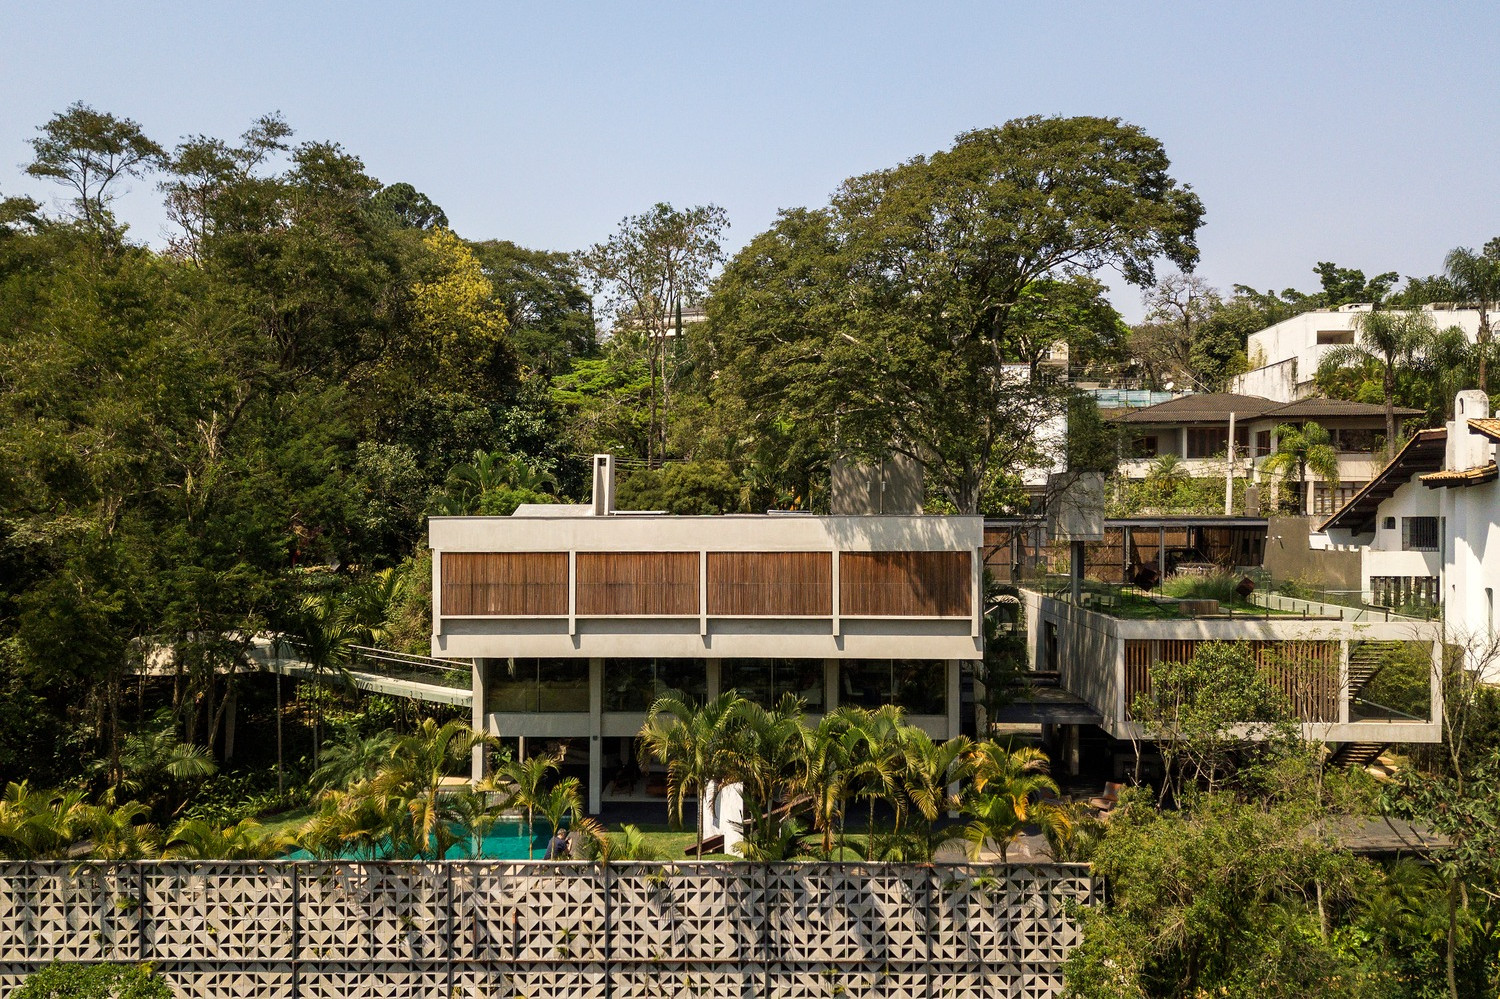 Dostavba vily ze 70. let vyhrává jako hitparáda brazilského designu